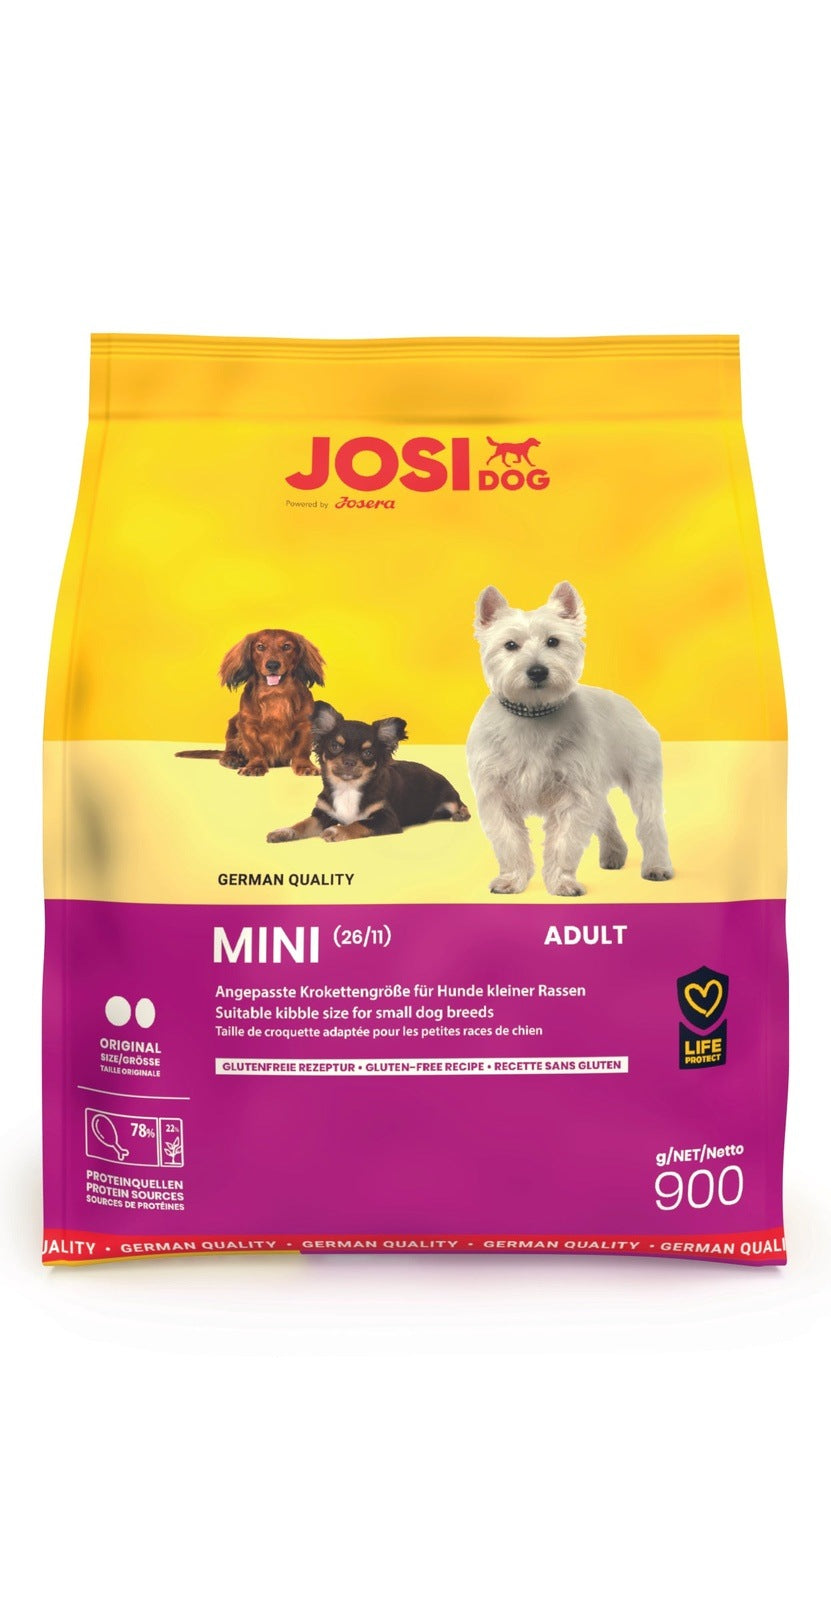 Artikel mit dem Namen JosiDog Mini im Shop von zoo.de , dem Onlineshop für nachhaltiges Hundefutter und Katzenfutter.